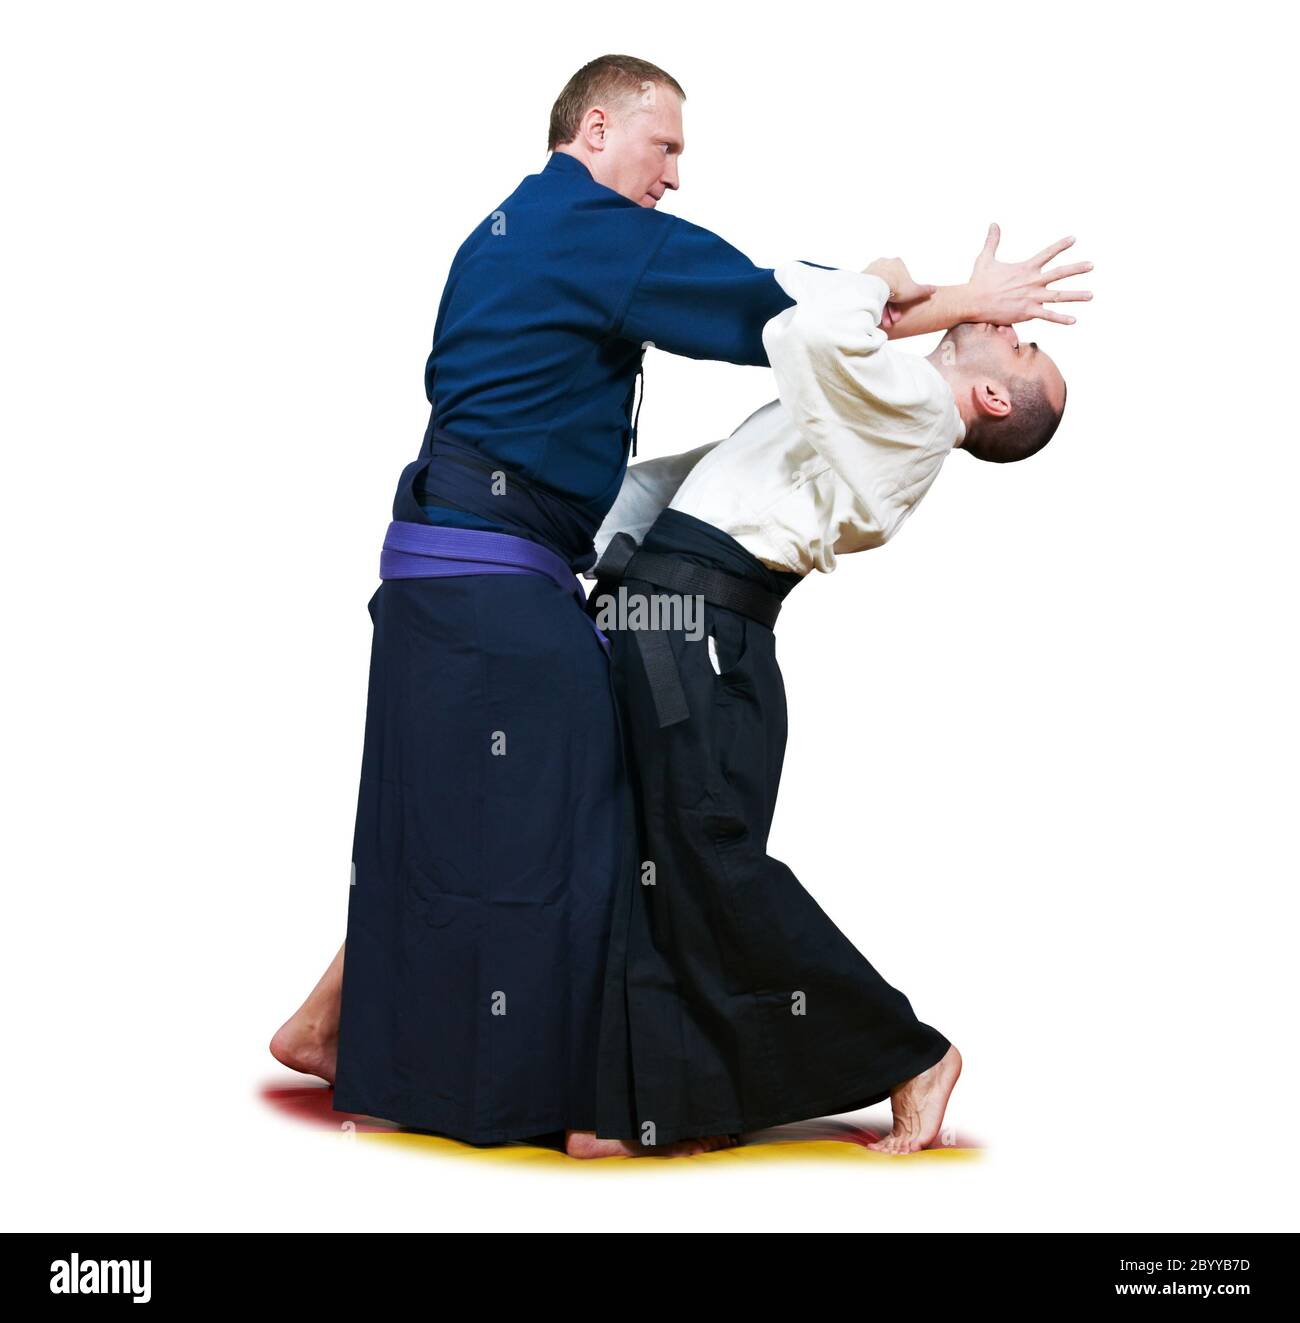 Sparring di due combattenti jujitsu Foto Stock